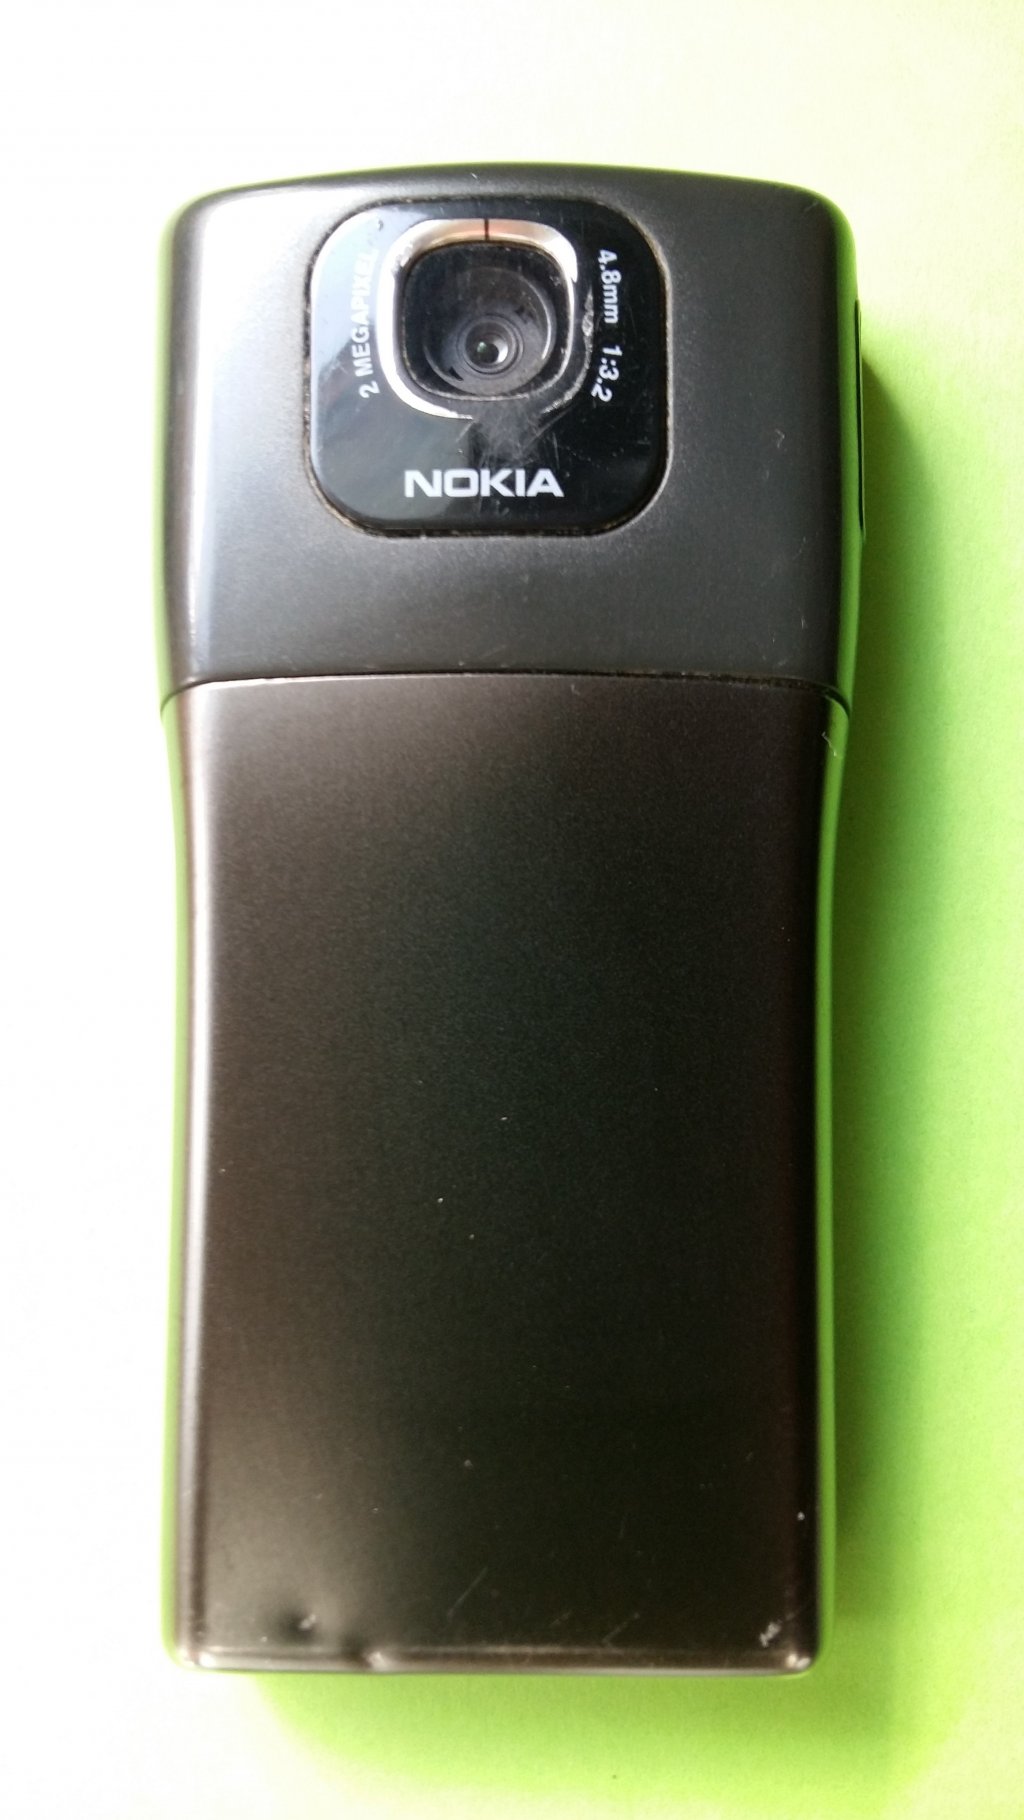 image-7519994-Nokia_N91-2_(1)3.w640.jpg